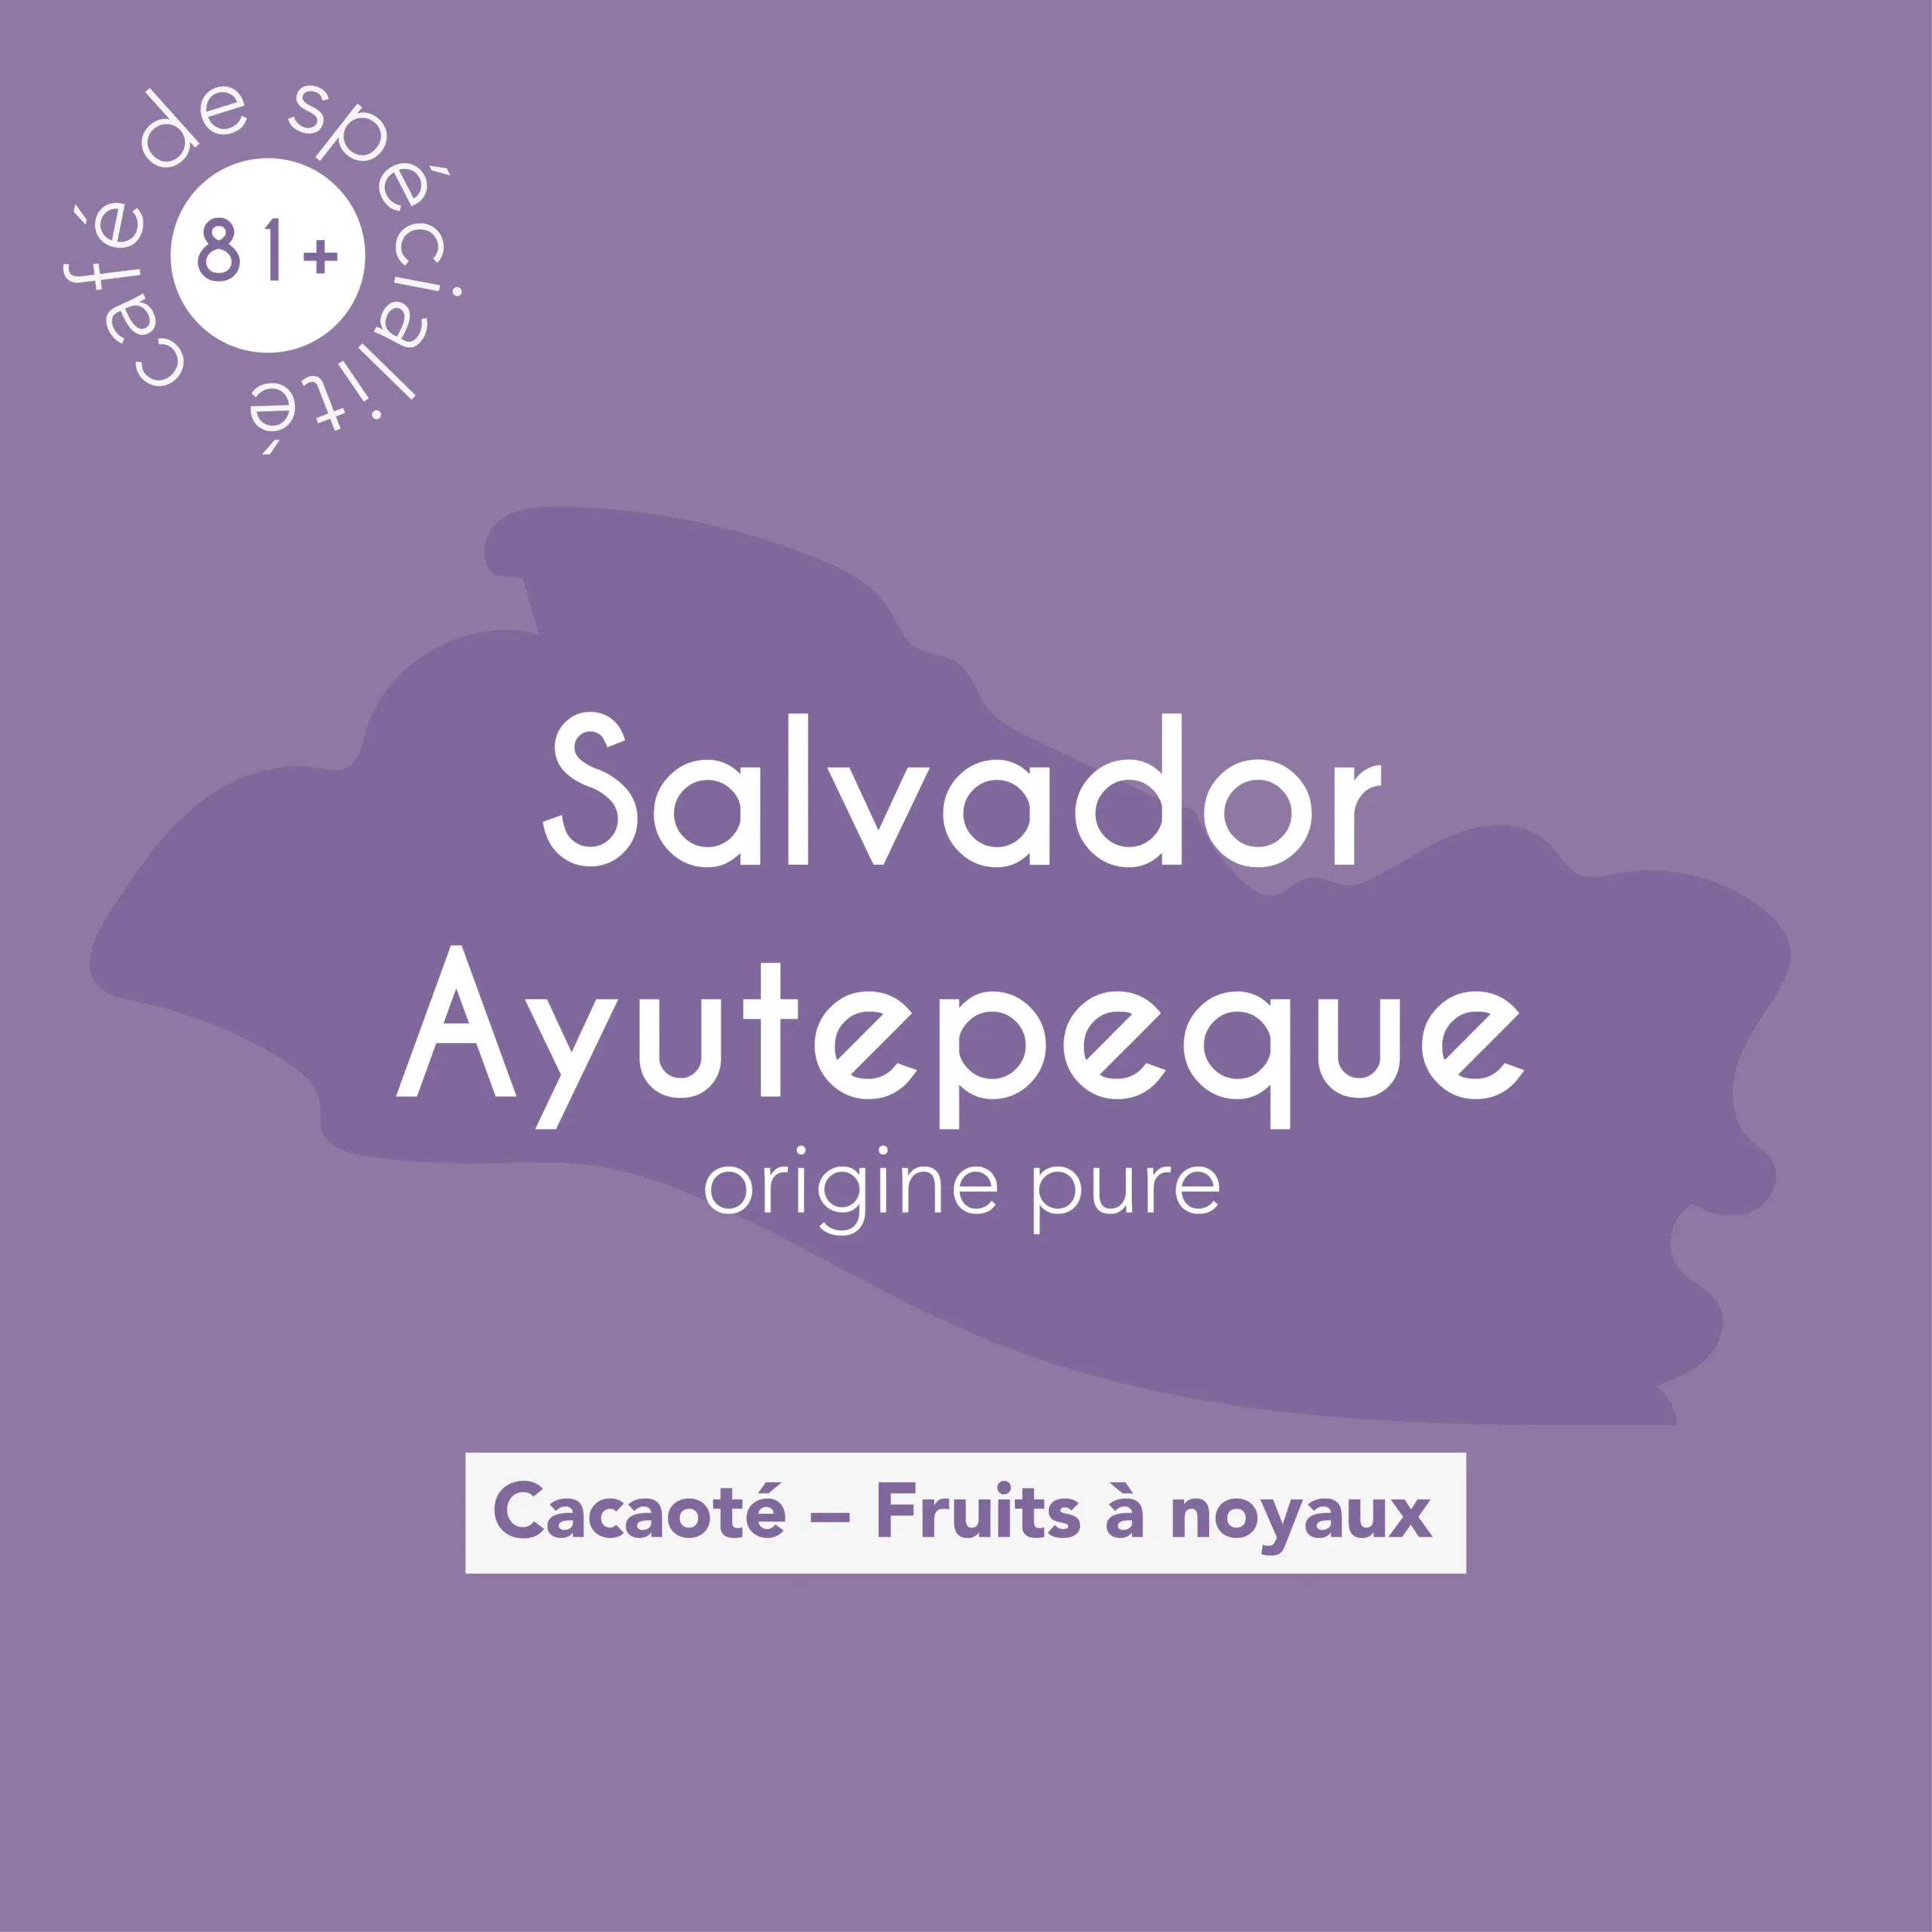 Description des flaveurs du café de spécialité Salvador Ayutepeque